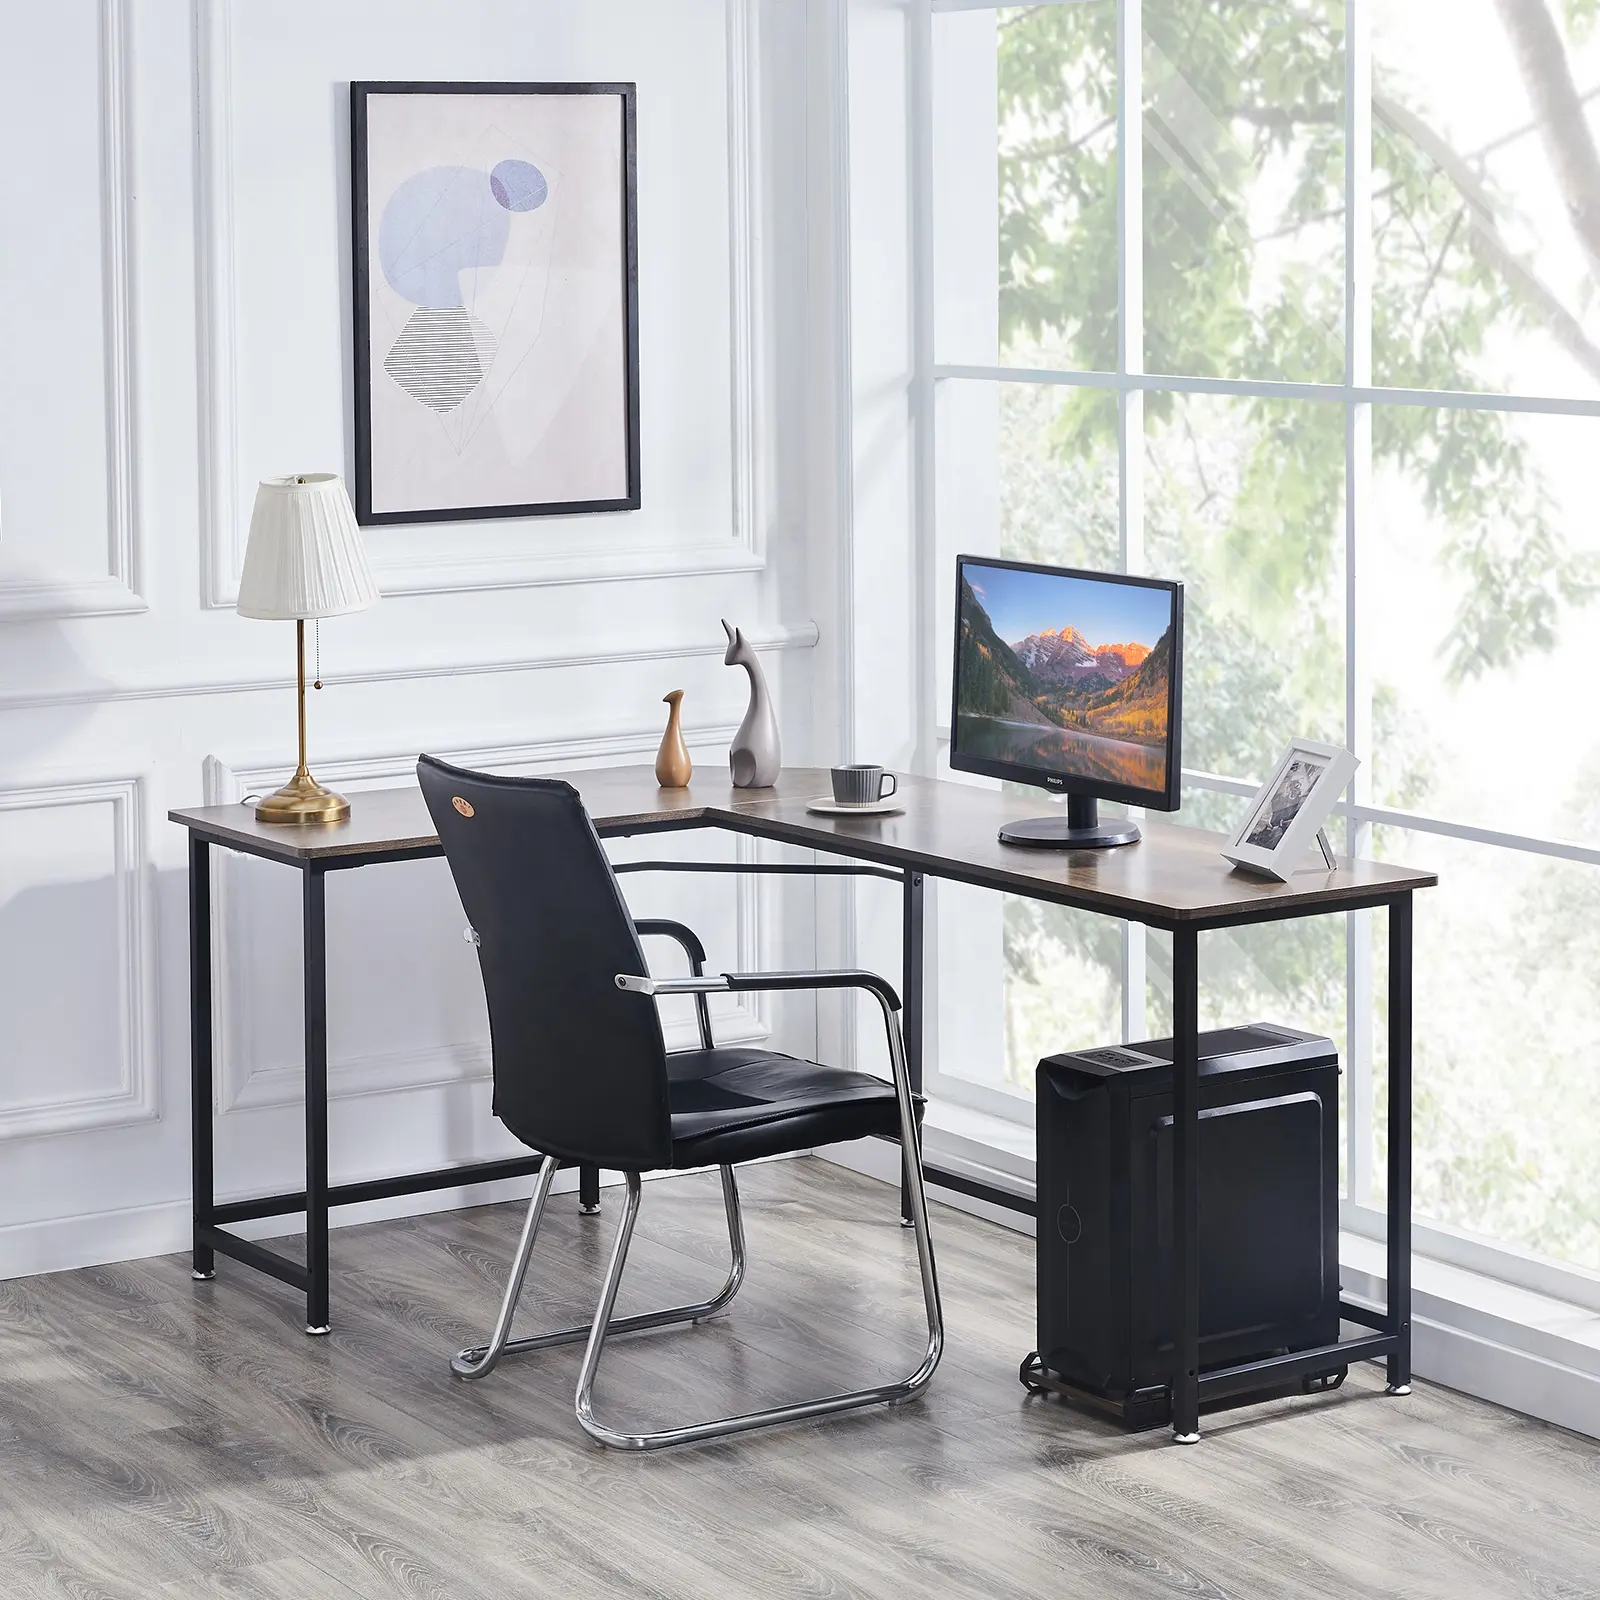 Penjualan Laris Desain Baru Meja Belajar Meja Rumah Kayu Modern Sederhana Meja Komputer Meja Kantor